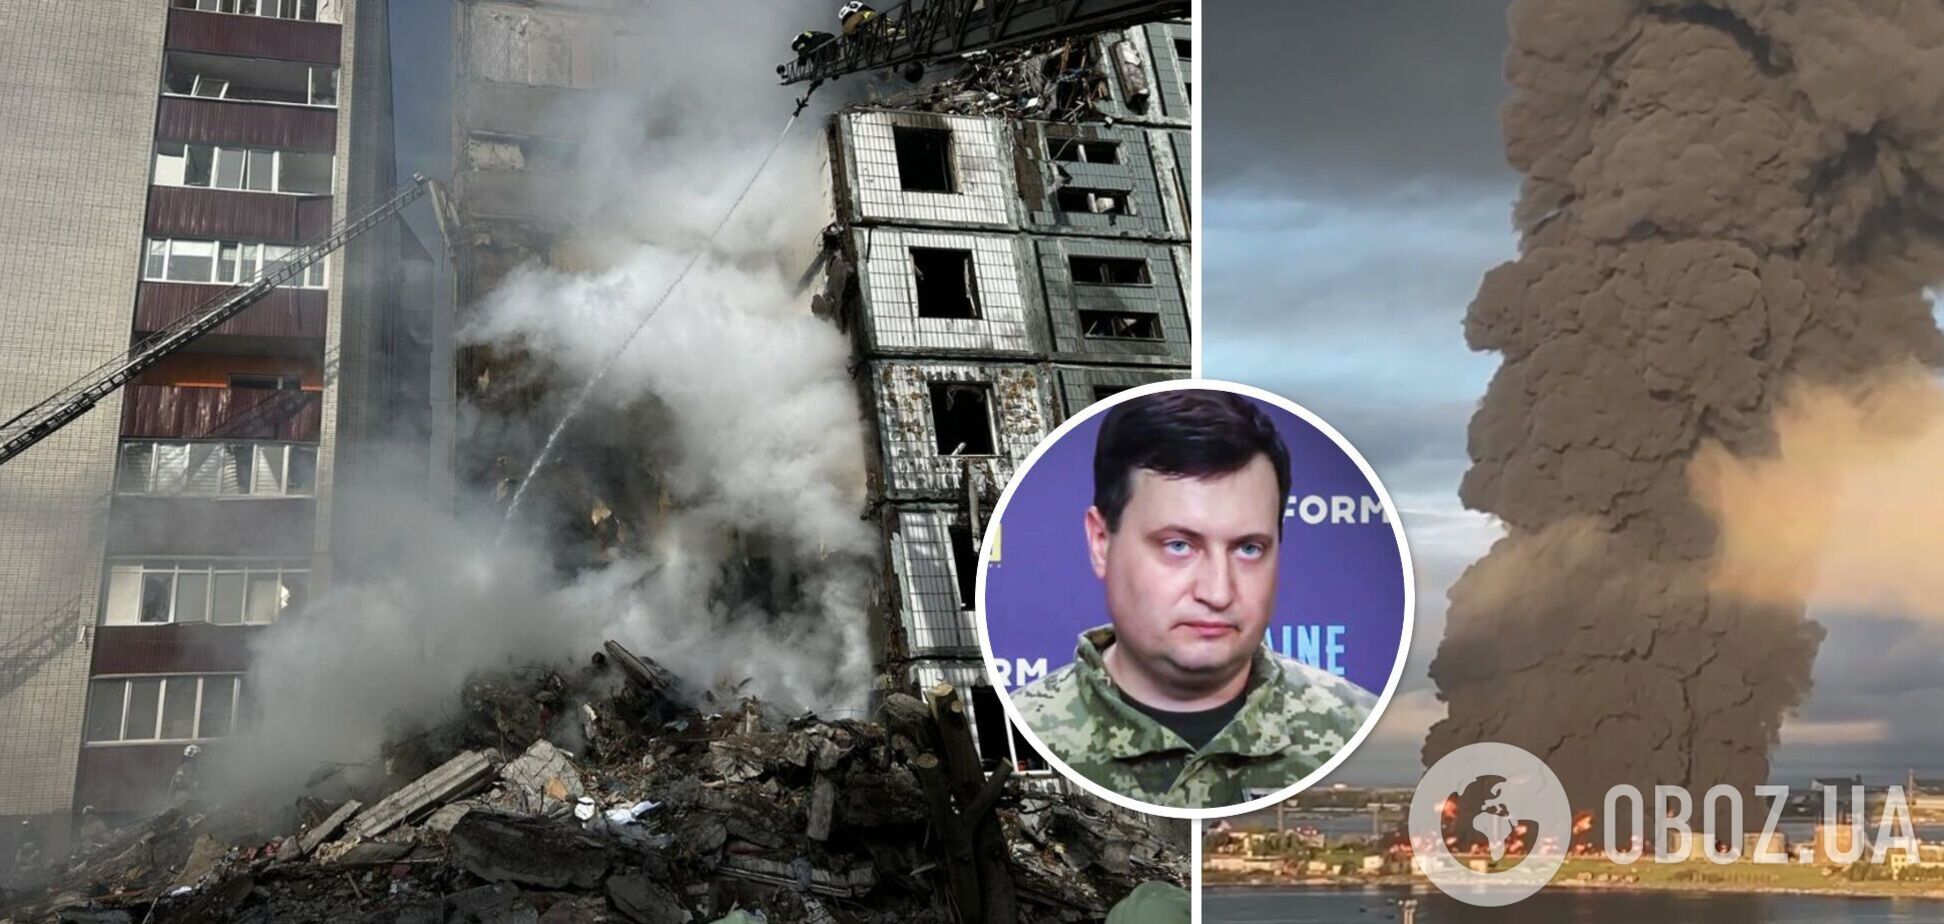 Андрій Юсов висловився про вибухи та пожежу в Севастополі